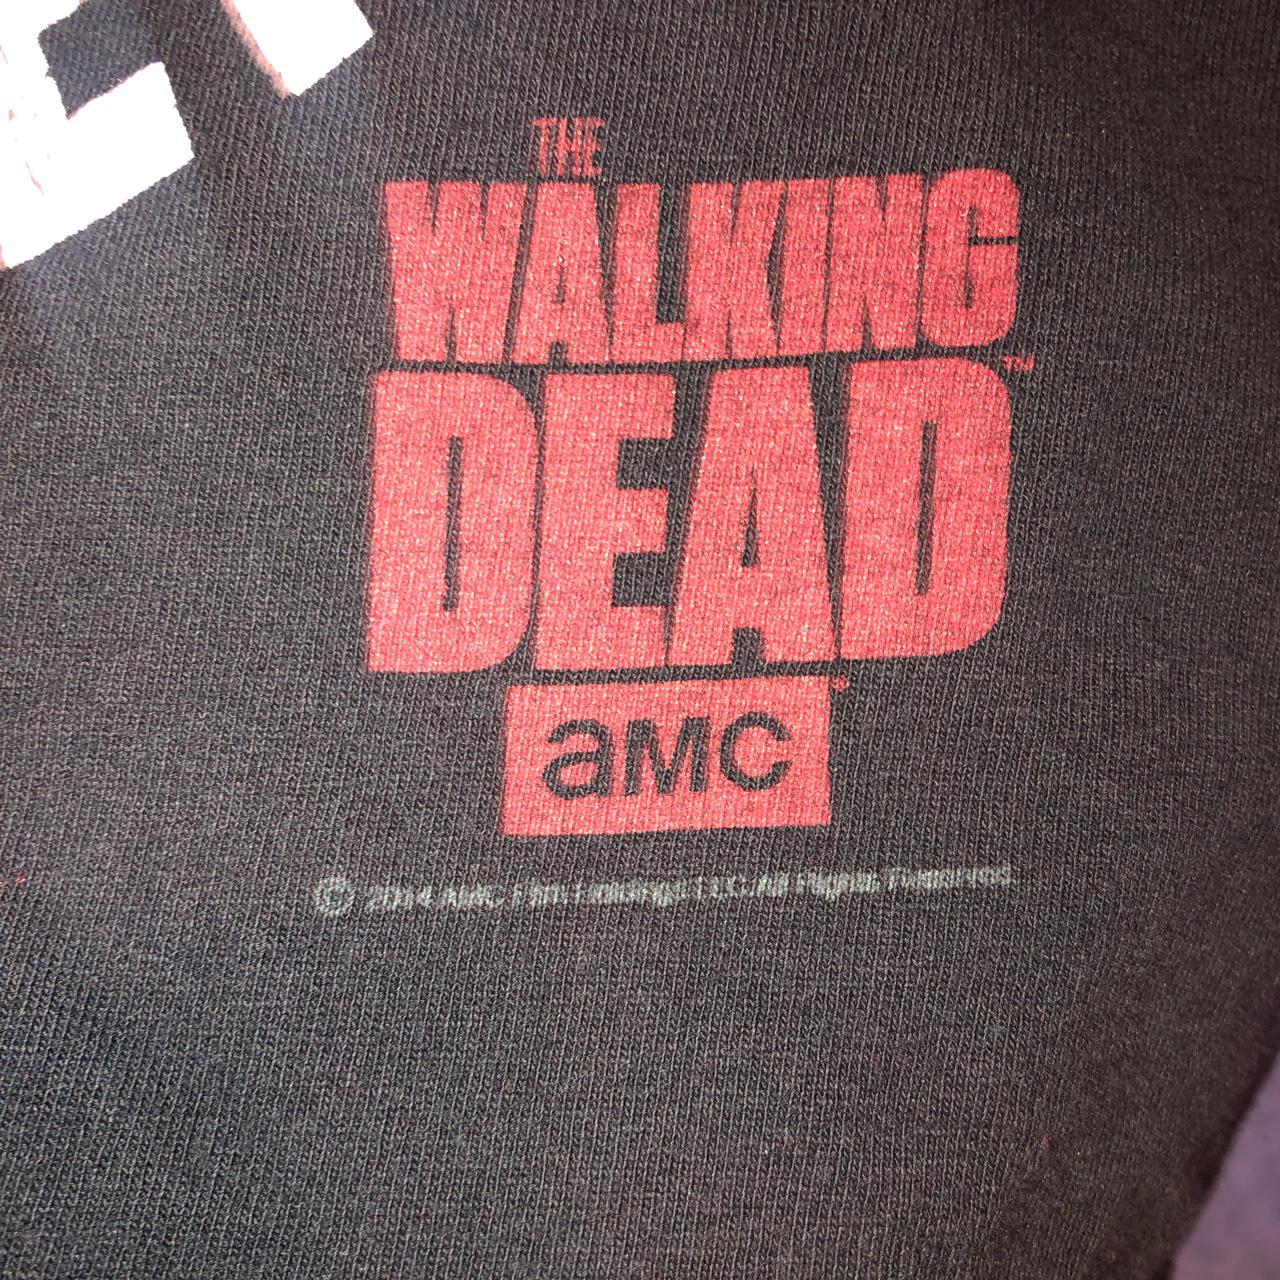 the walking dead merch shirt!! super comfy and it's - Depop